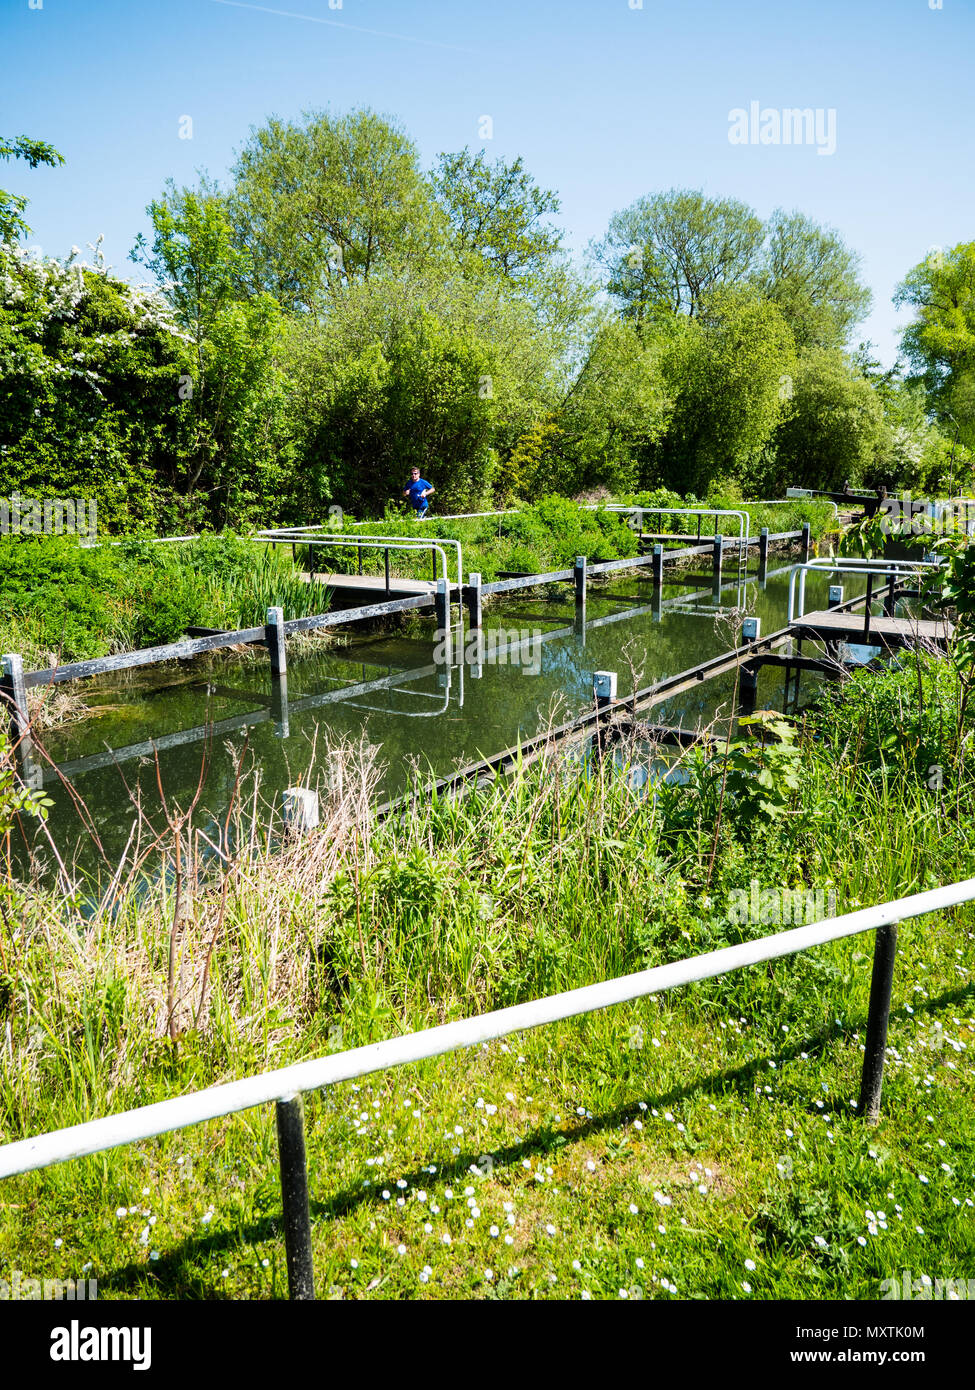 Monkey Marsh Lock l'un des deux côtés de la rivière, serrures Gazon Kennett, monument antique, Thatcham, Newbury, Berkshire, Royaume-Uni, Angleterre, RU, FR. Banque D'Images